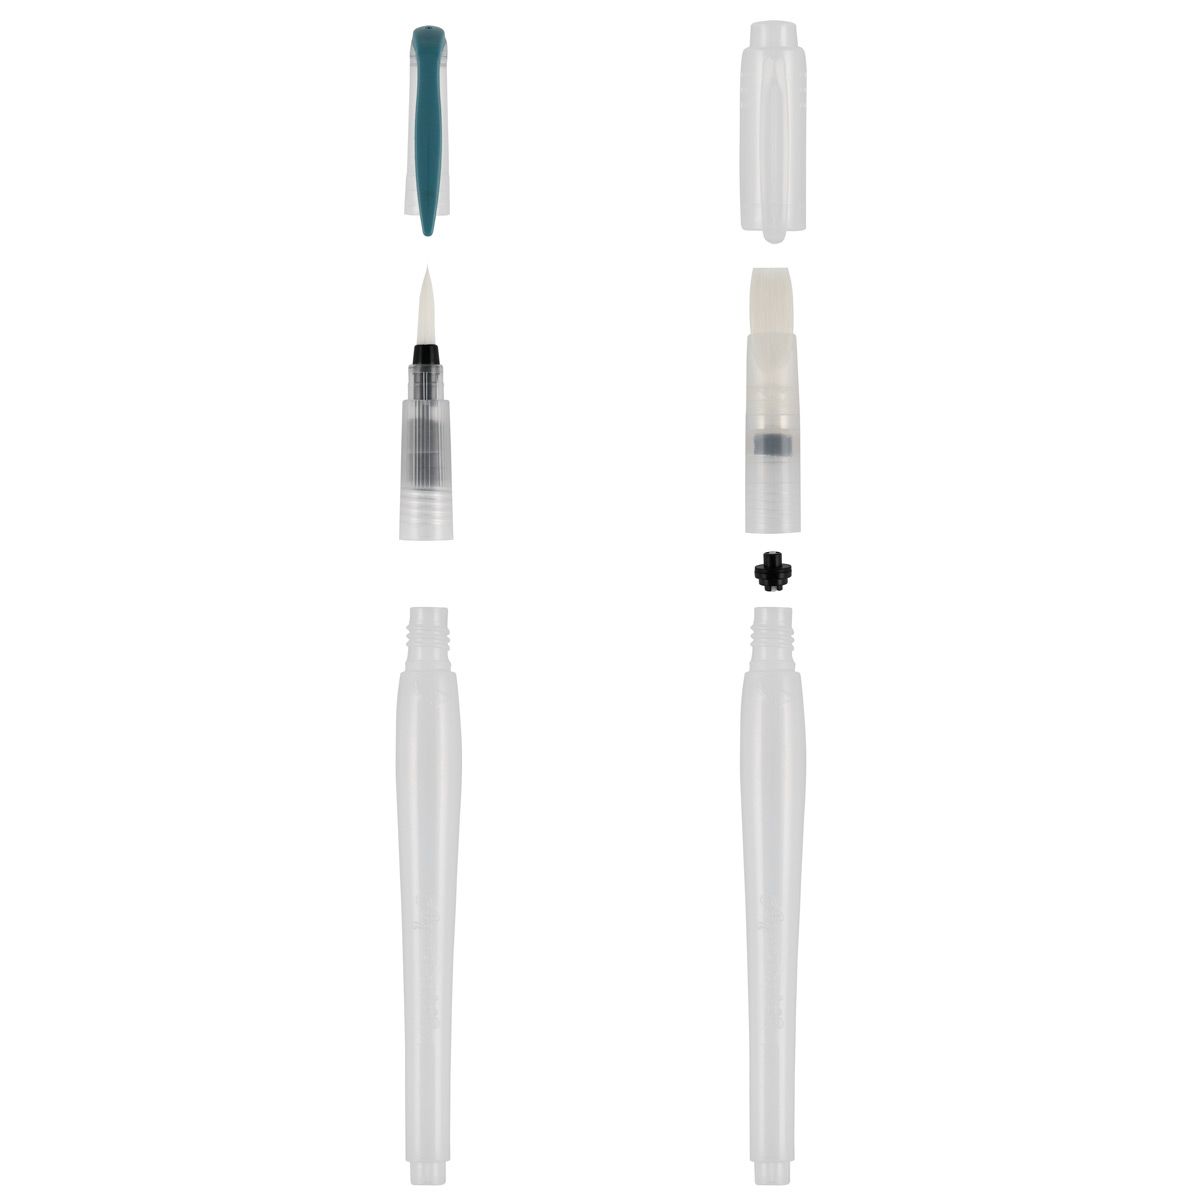 Aquastroke Watercolor Water Brush Pens